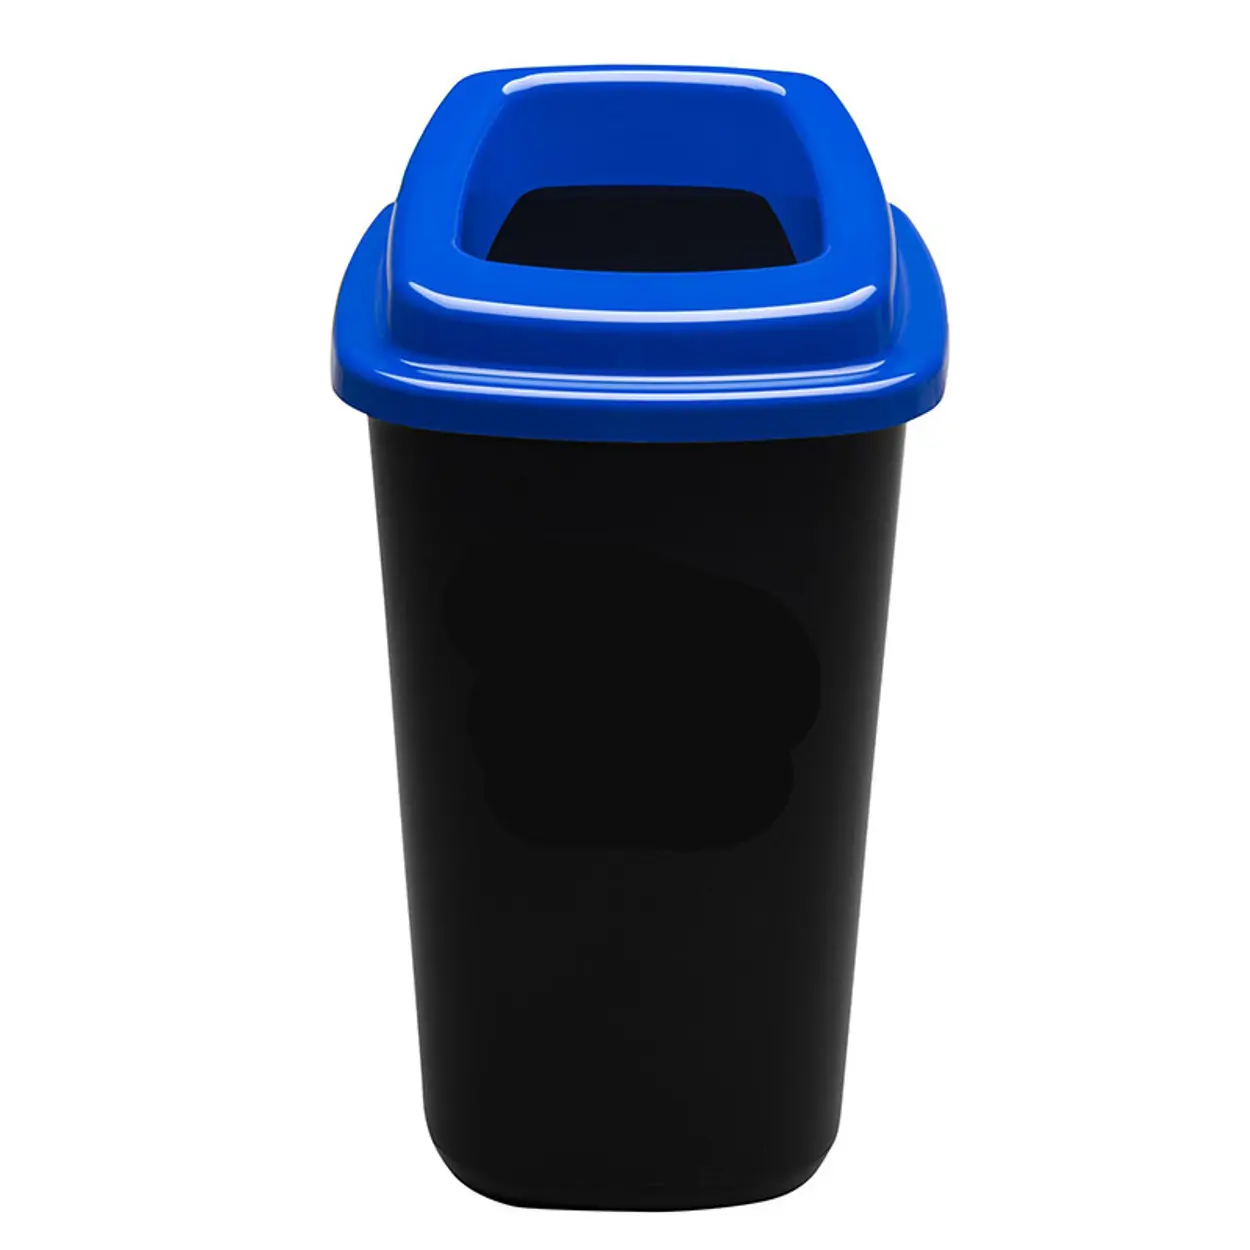 Plastový kôš na triedený odpad, 45 l, modrá